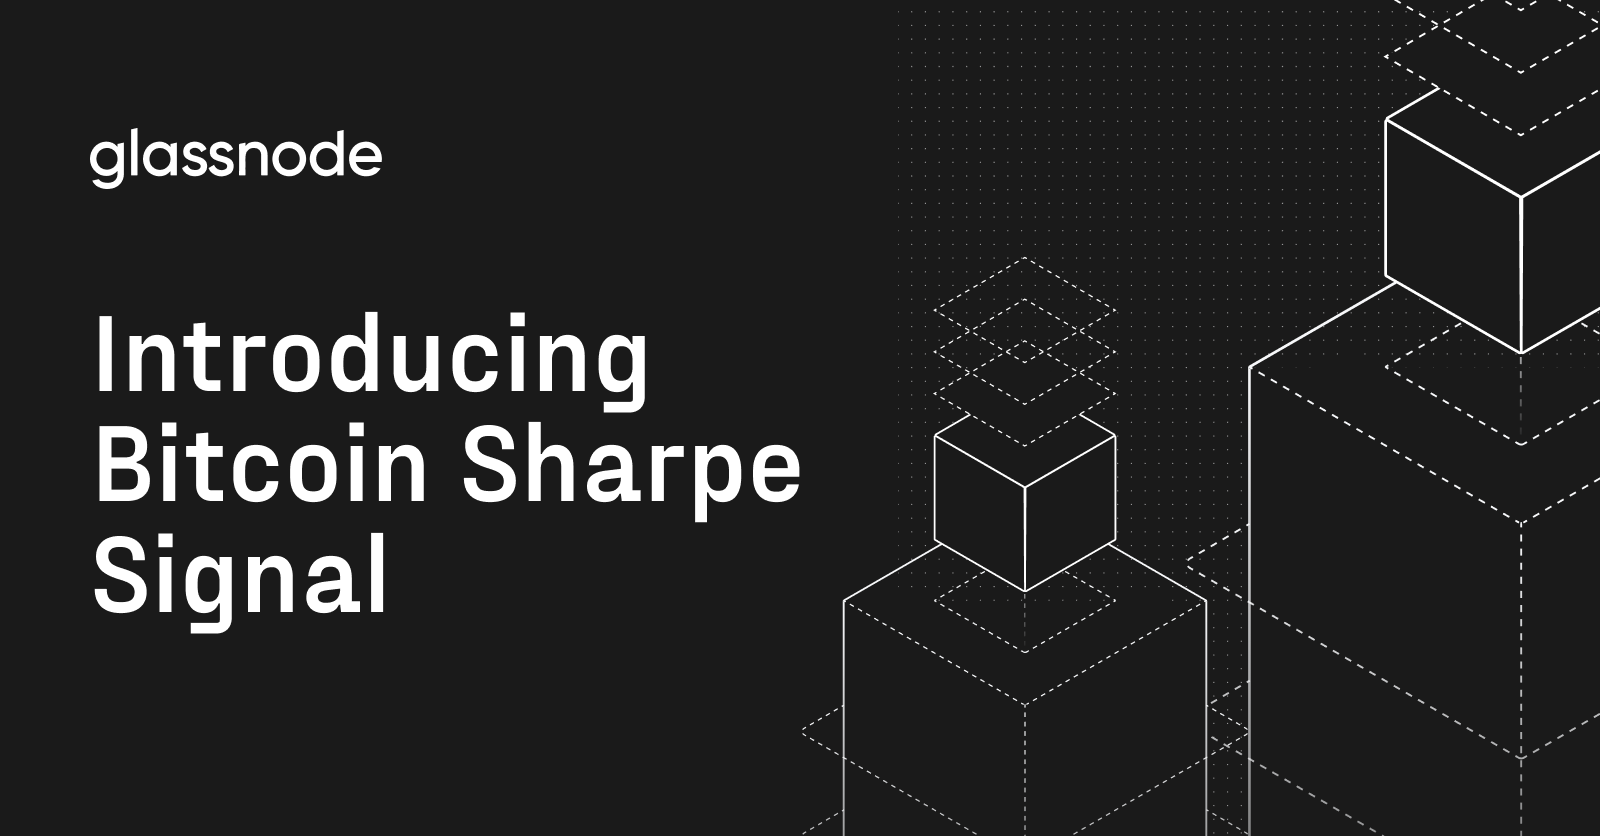 Introduktion af Bitcoin Sharpe Signal: Simplificering af Bitcoin-handler med Glassnode-data